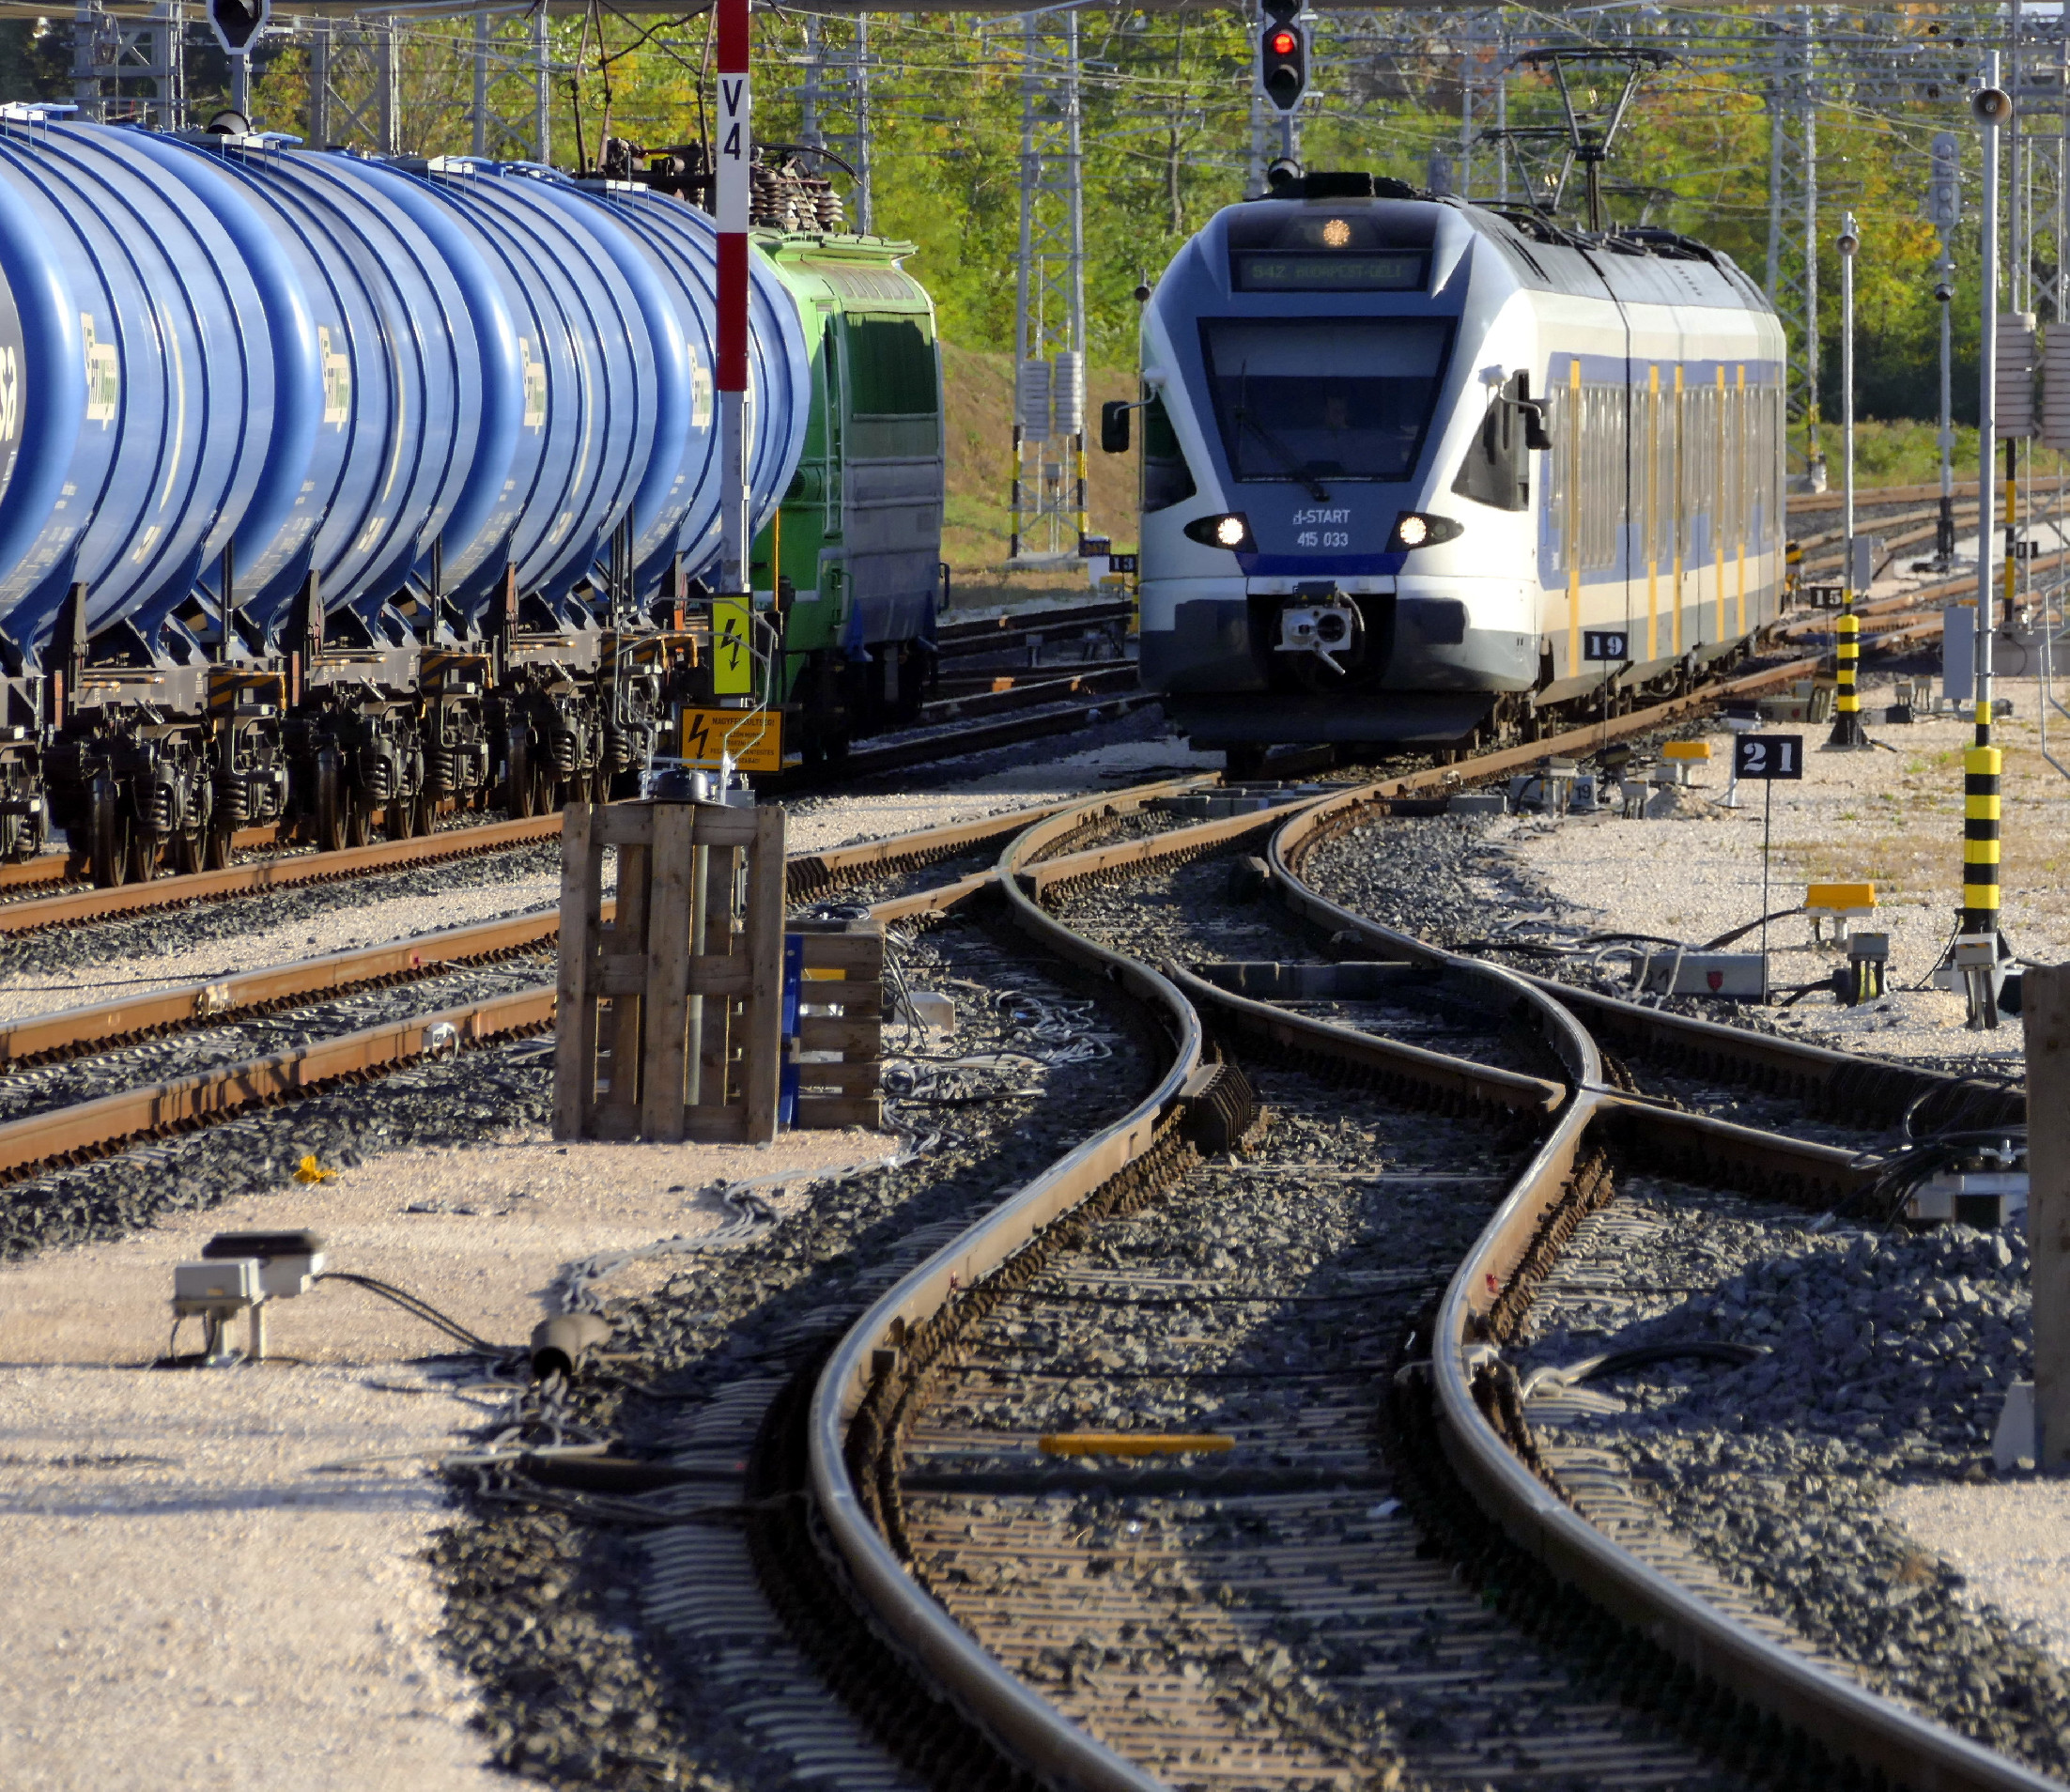 MÁV: Kihagyta a vasat a vasbetonból Mészáros cége a vasútfejlesztés során